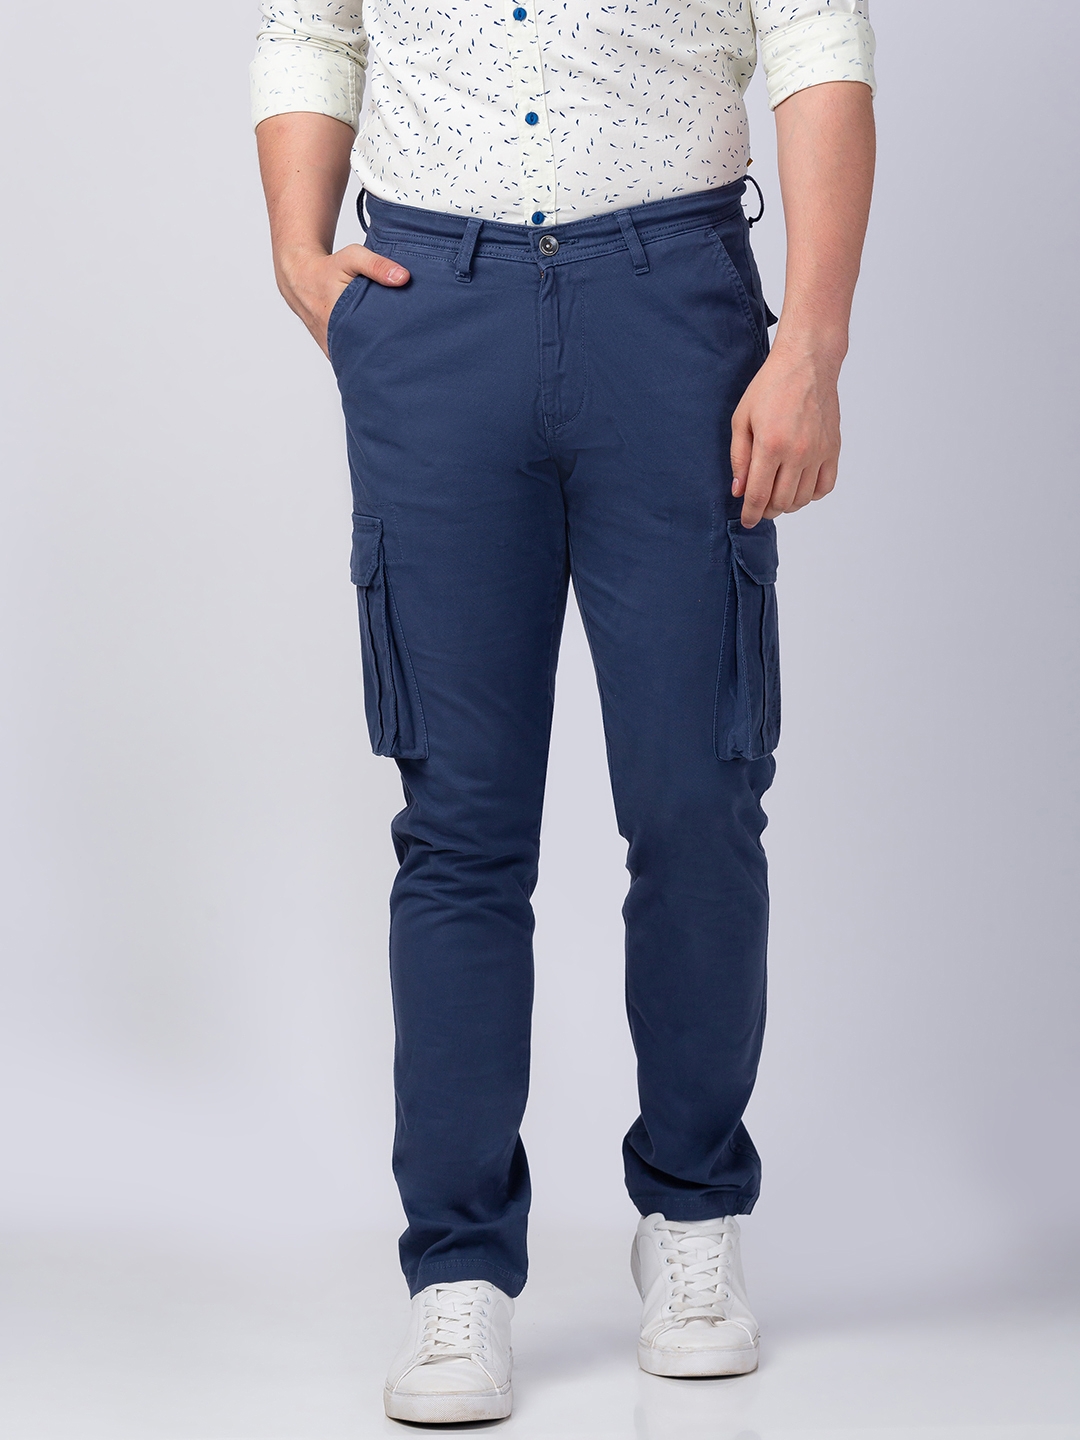 Spykar | Men's Blue Cotton Solid Trousers 0